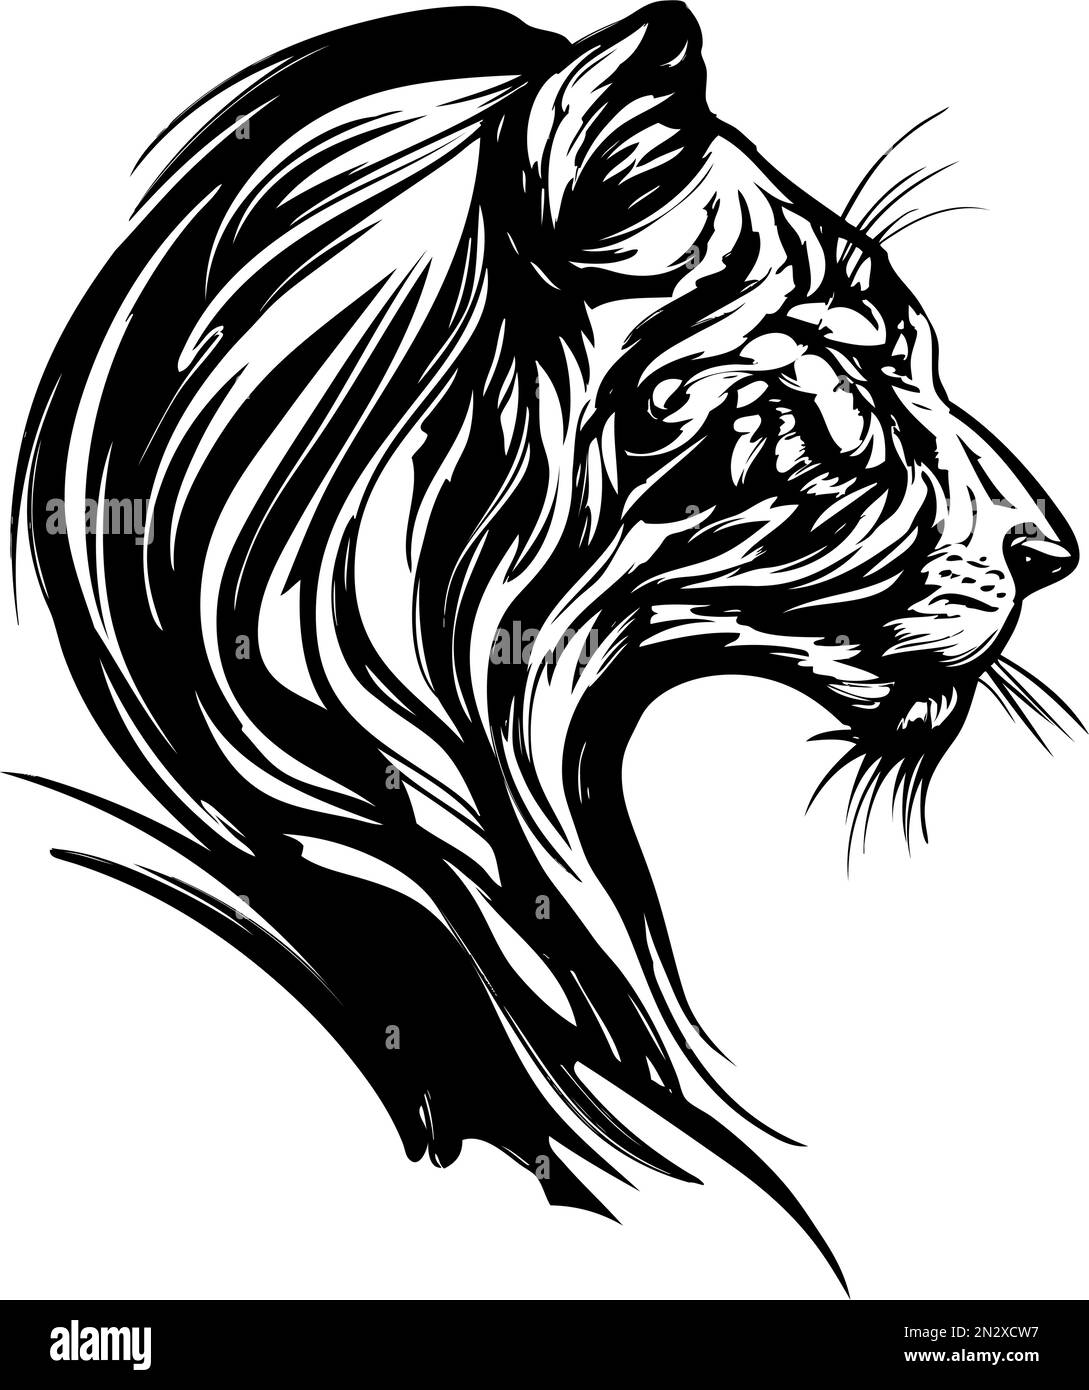 tigre animal, un grand chat prédateur, dessin vectoriel dessiné à la main. Illustration de Vecteur